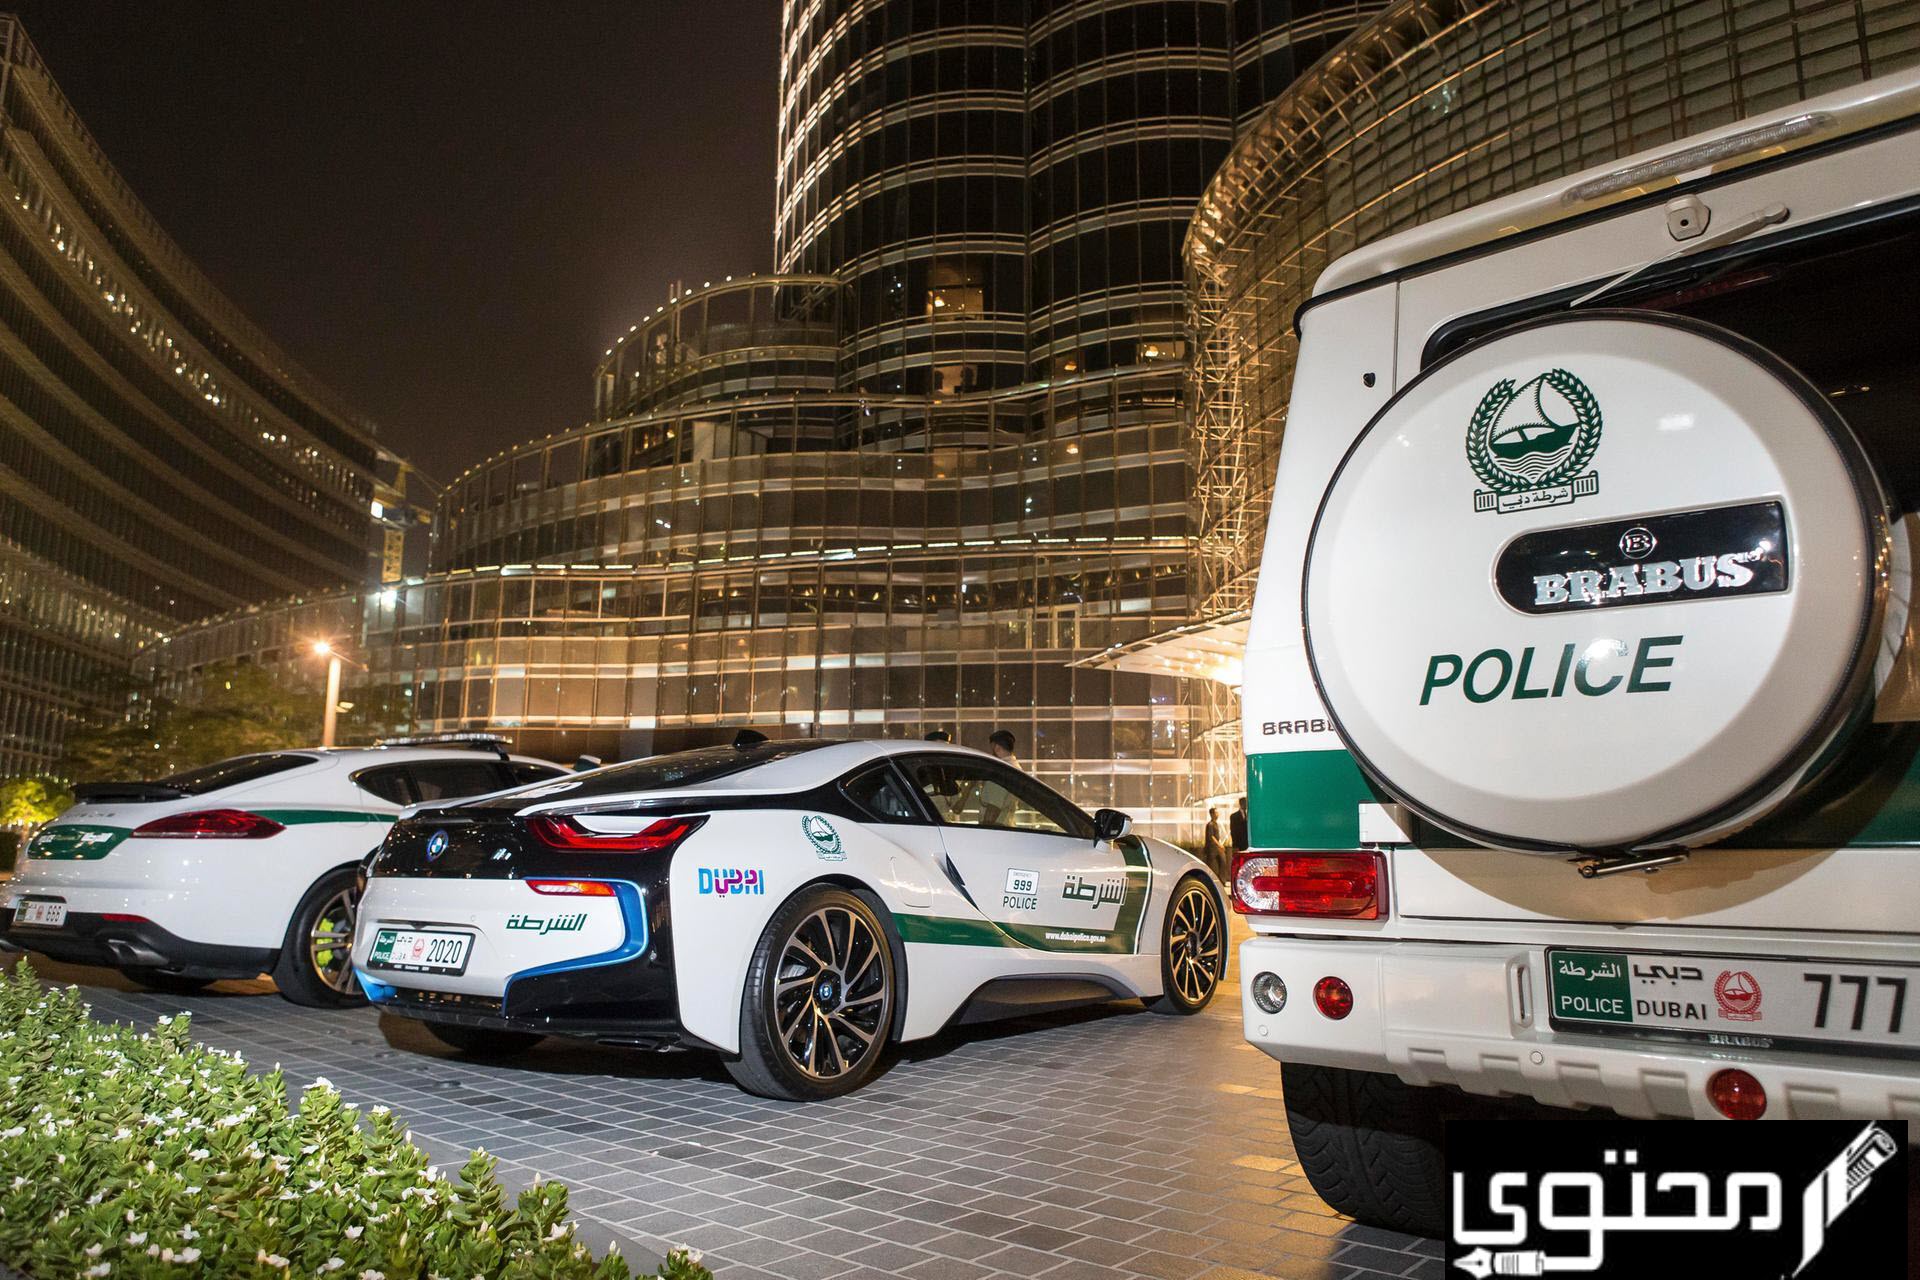 صور سيارات الشرطة في دبي